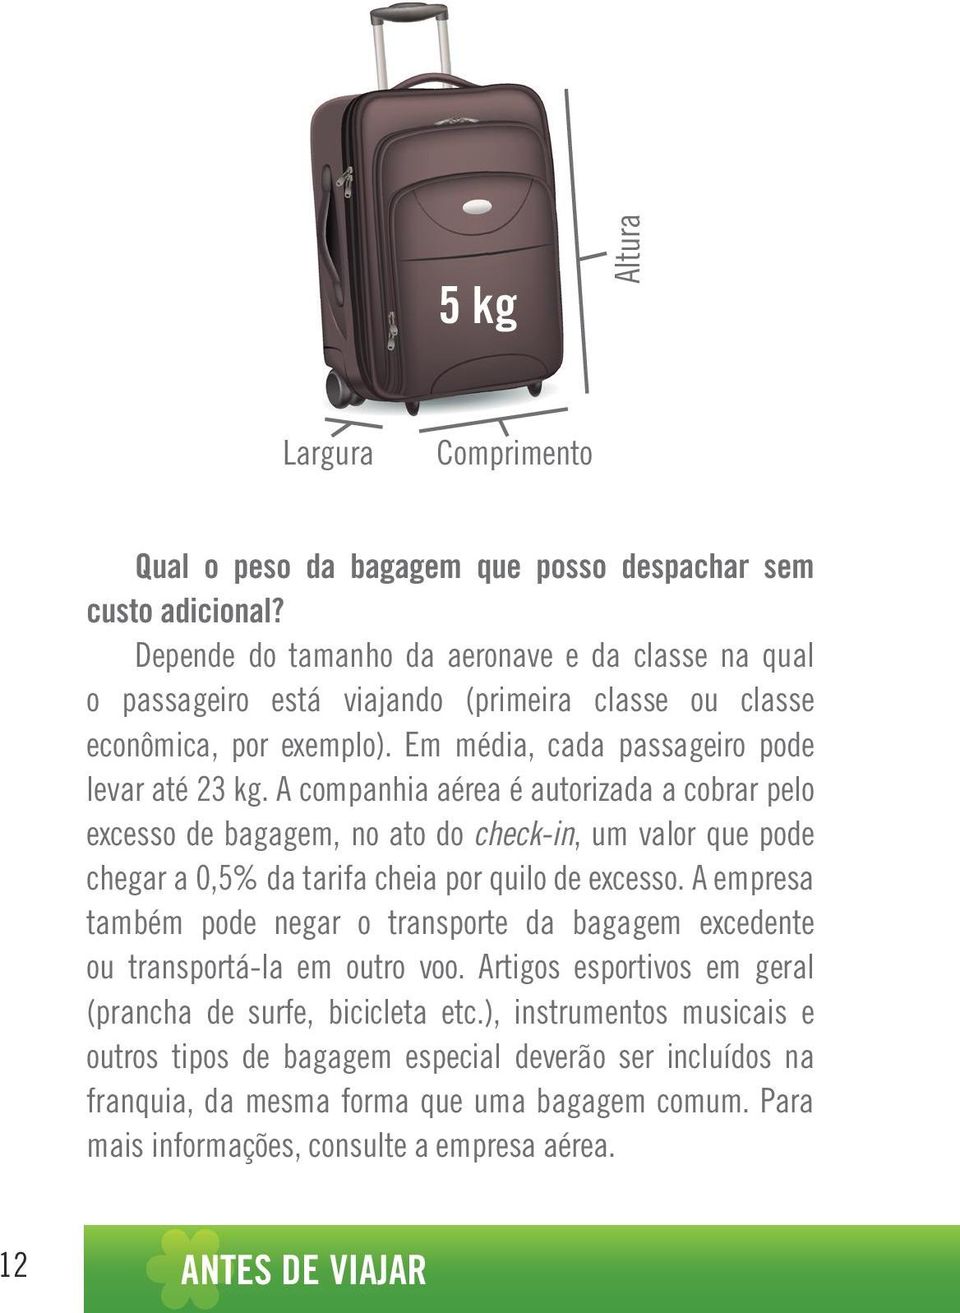 A companhia aérea é autorizada a cobrar pelo excesso de bagagem, no ato do check-in, um valor que pode chegar a 0,5% da tarifa cheia por quilo de excesso.